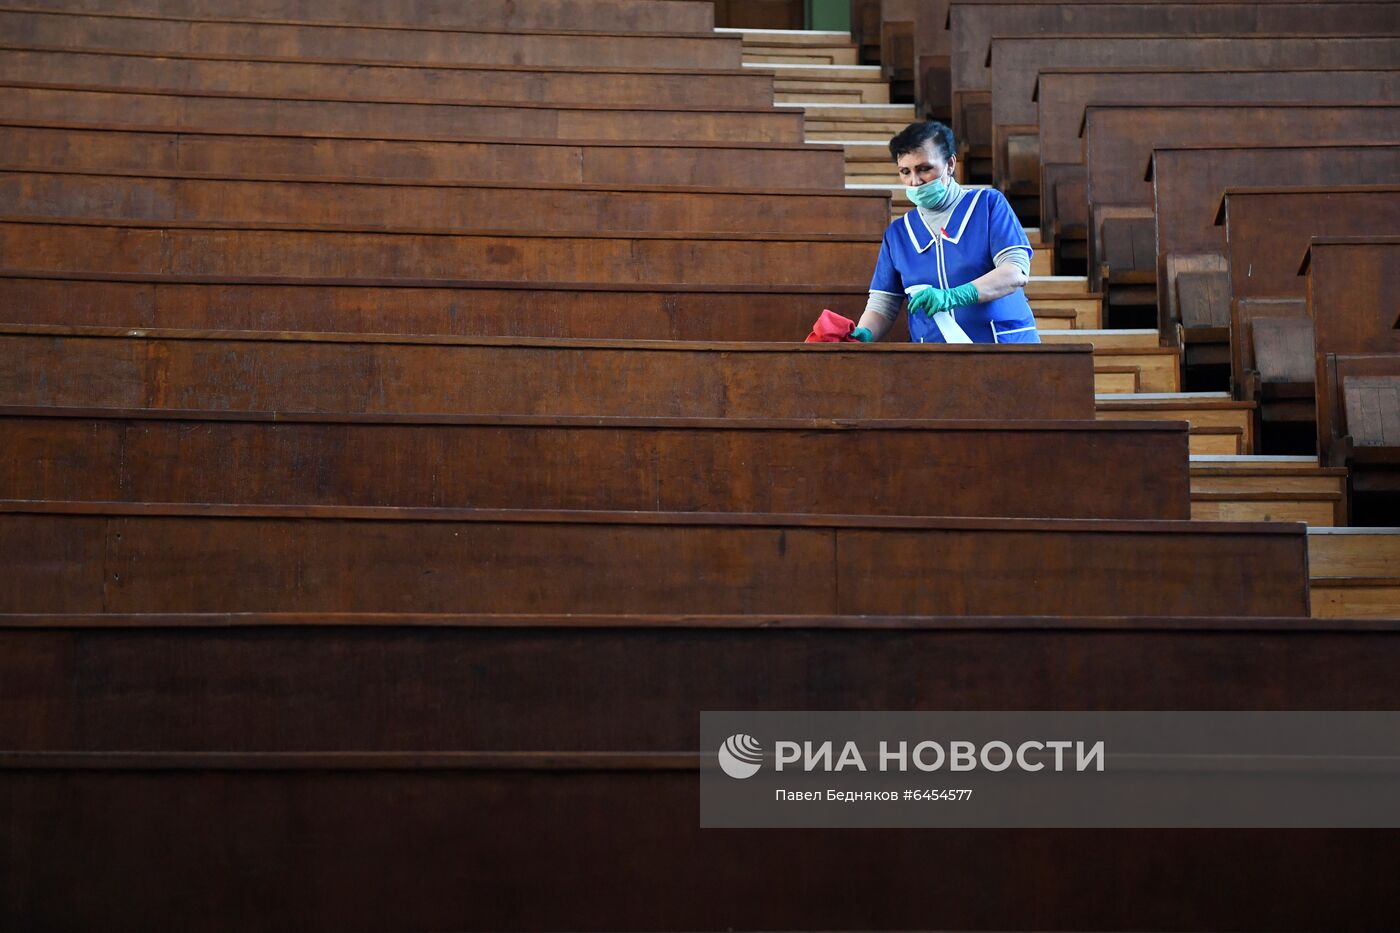 Подготовка МГУ к началу очного обучения студентов